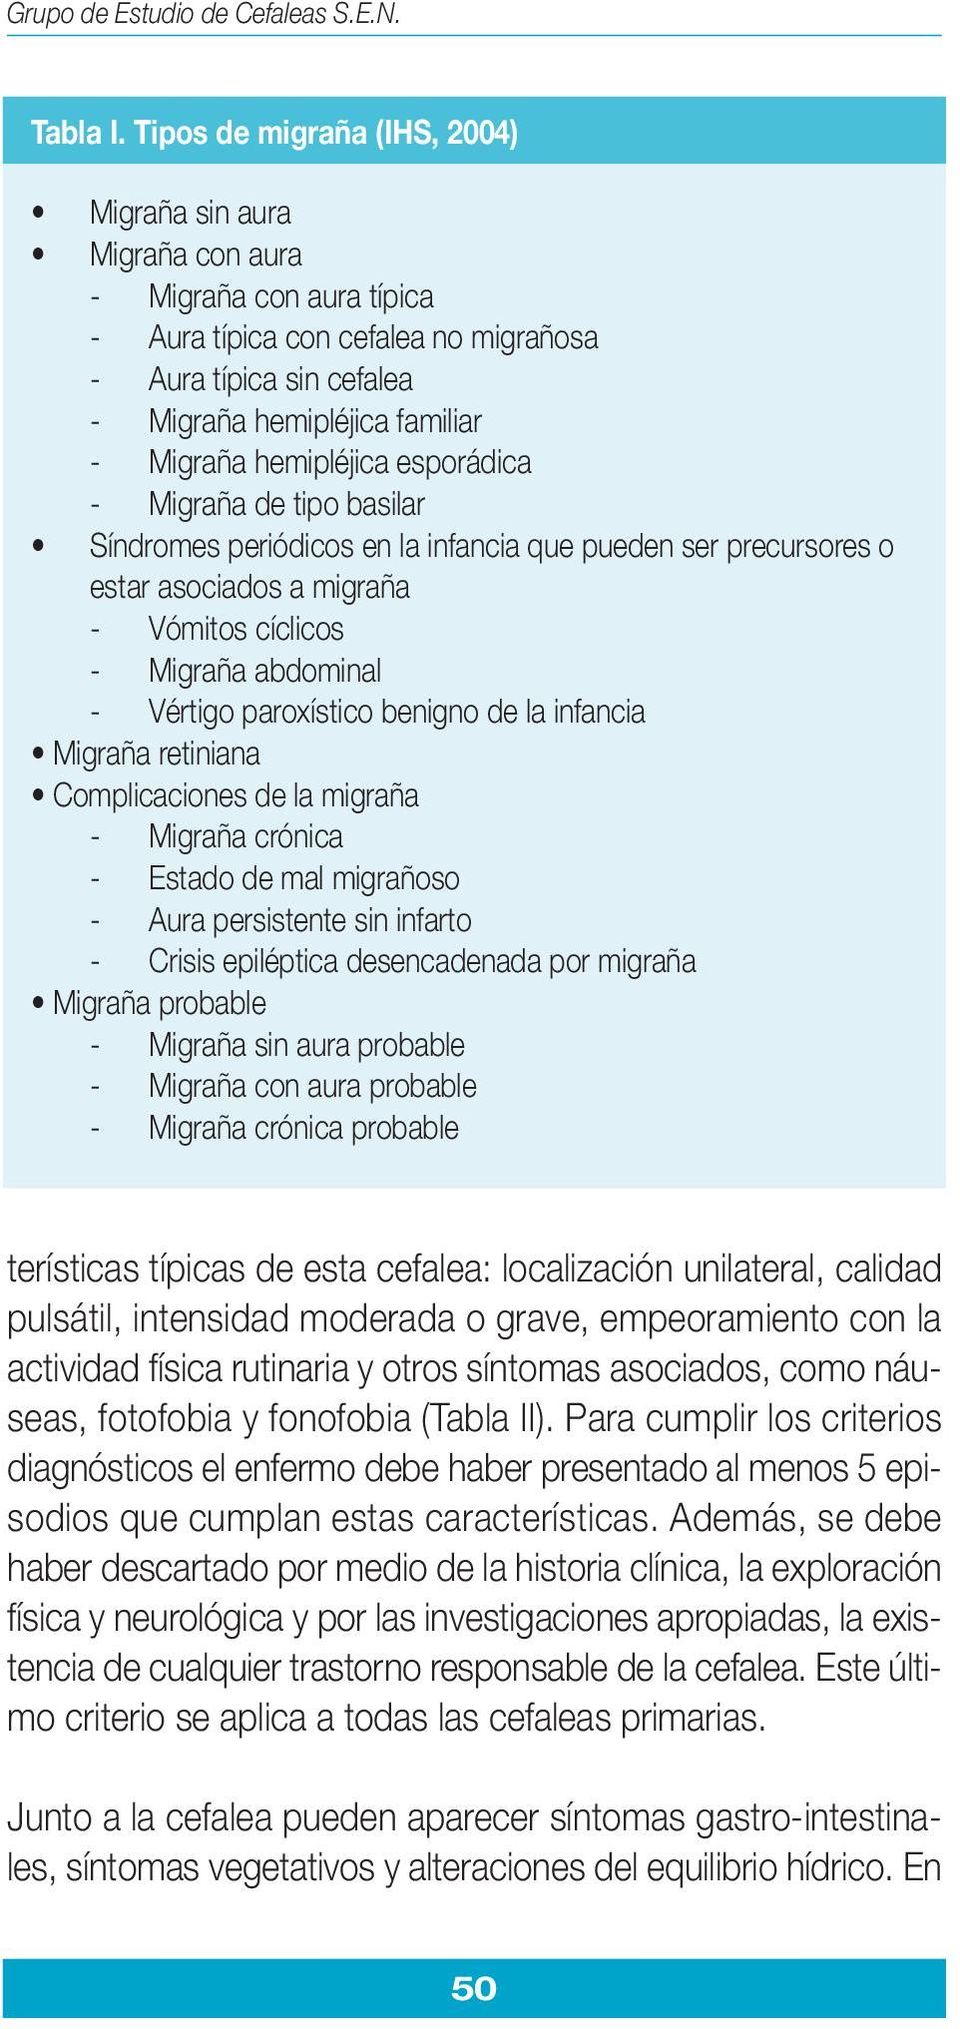 hemipléjica esporádica - Migraña de tipo basilar Síndromes periódicos en la infancia que pueden ser precursores o estar asociados a migraña - Vómitos cíclicos - Migraña abdominal - Vértigo